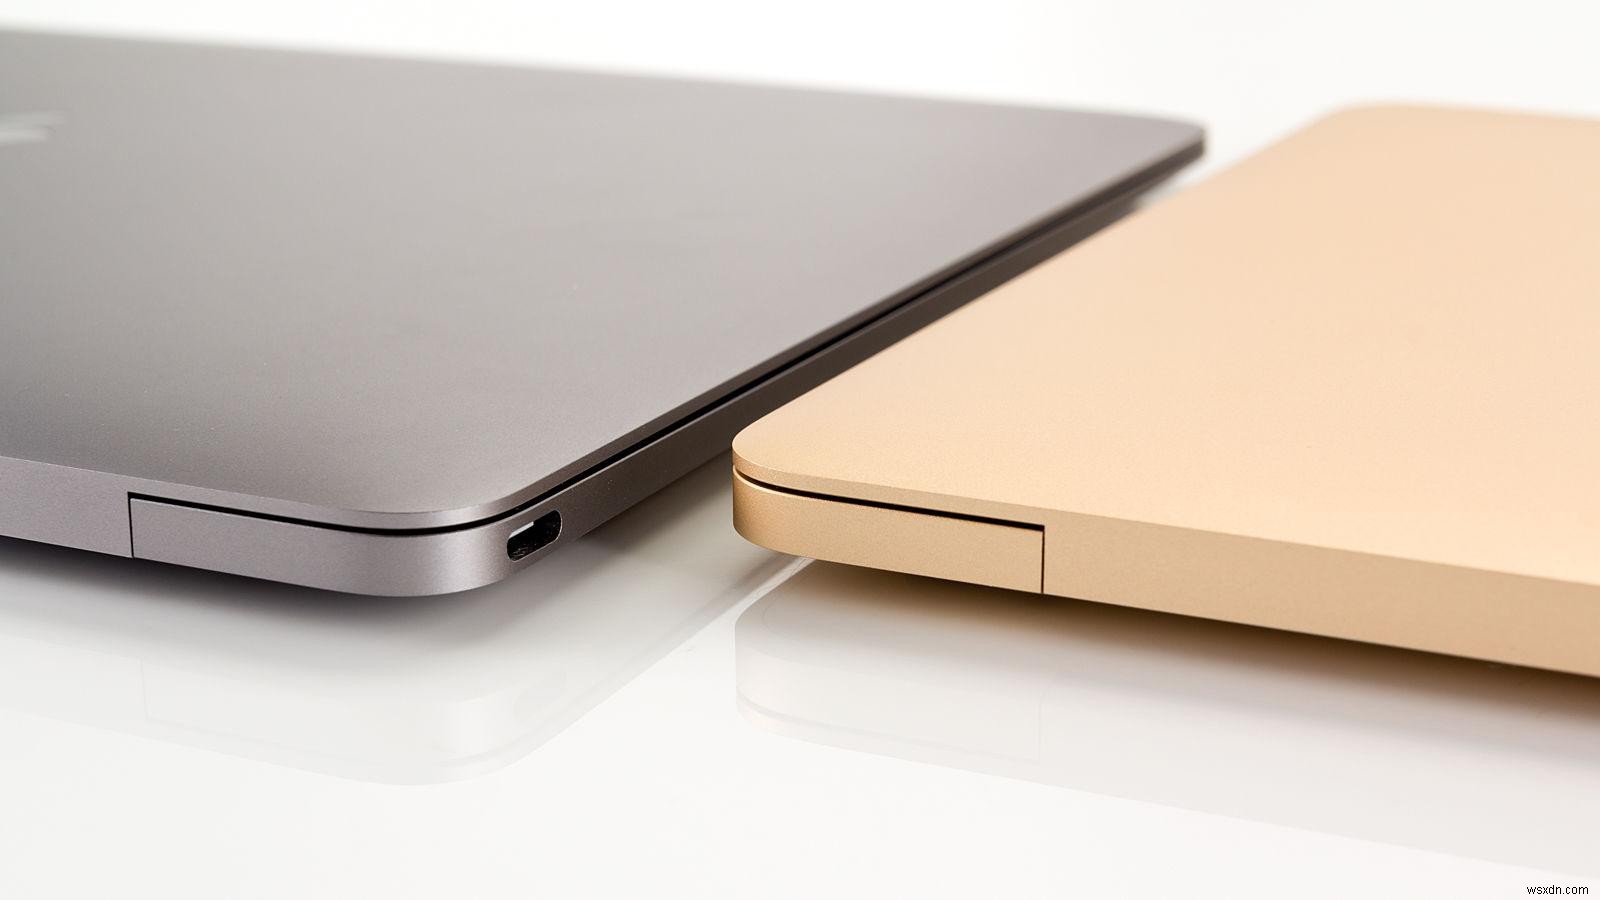 วิธีทดสอบแบตเตอรี่ MacBook:ดูว่าจำเป็นต้องเปลี่ยนและเปลี่ยนหรือไม่ 